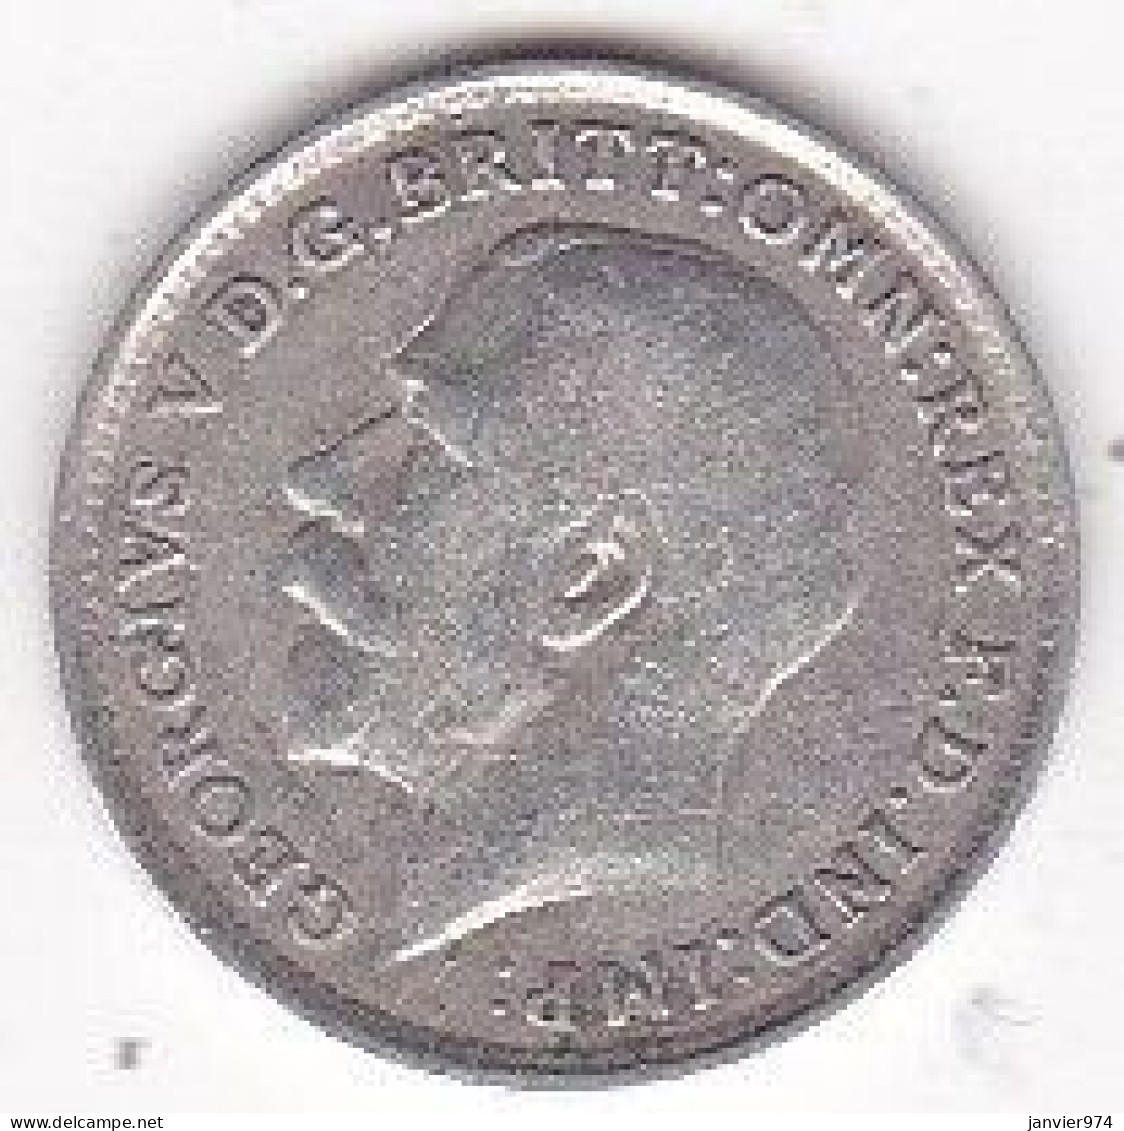 Grande Bretagne. 3 Pence 1919 . George VI, En Argent , KM# 813, Superbe - F. 3 Pence